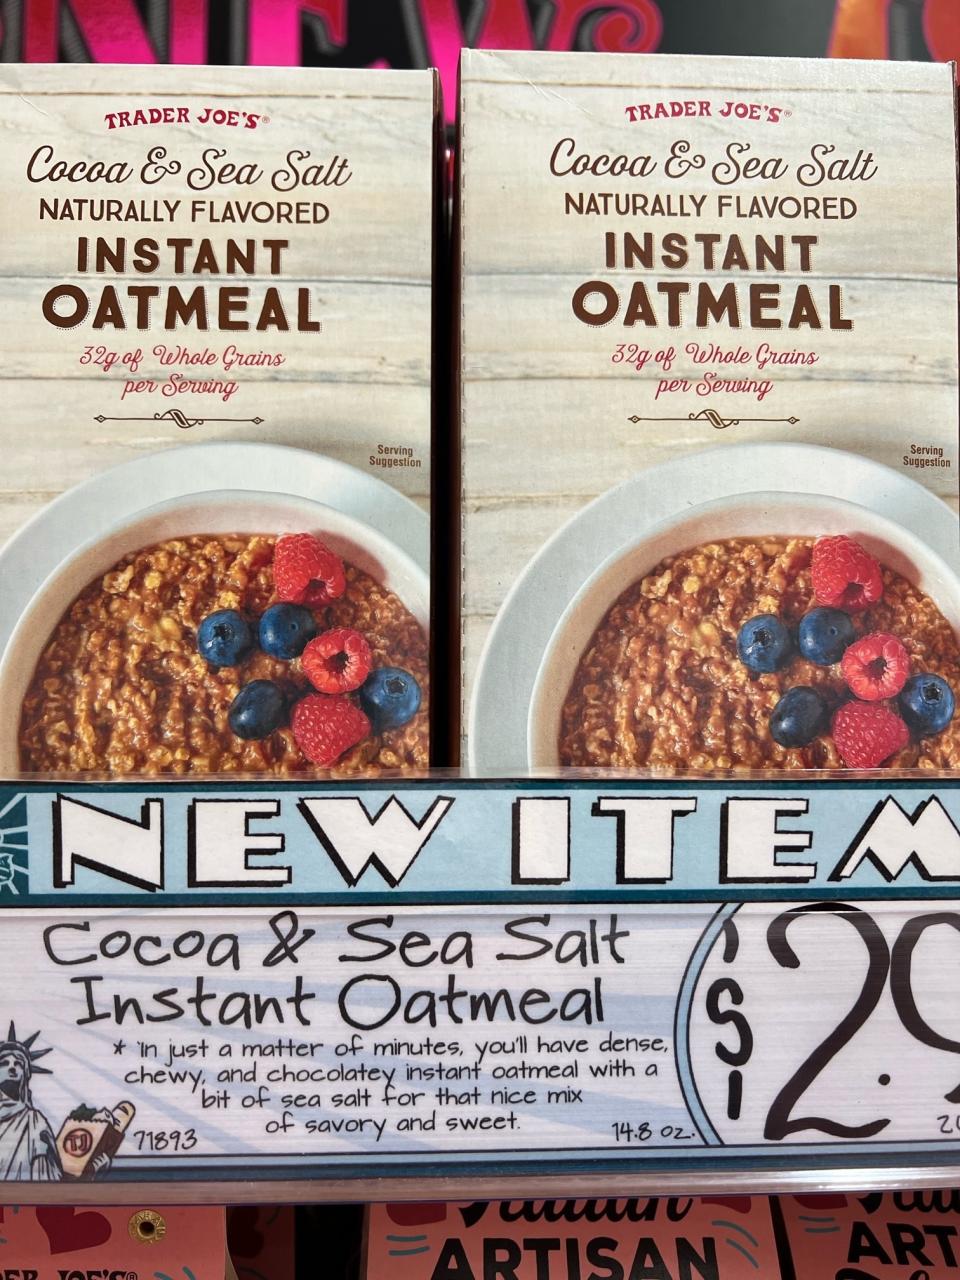 Cocoa & Sea Salt Instant Oatmeal